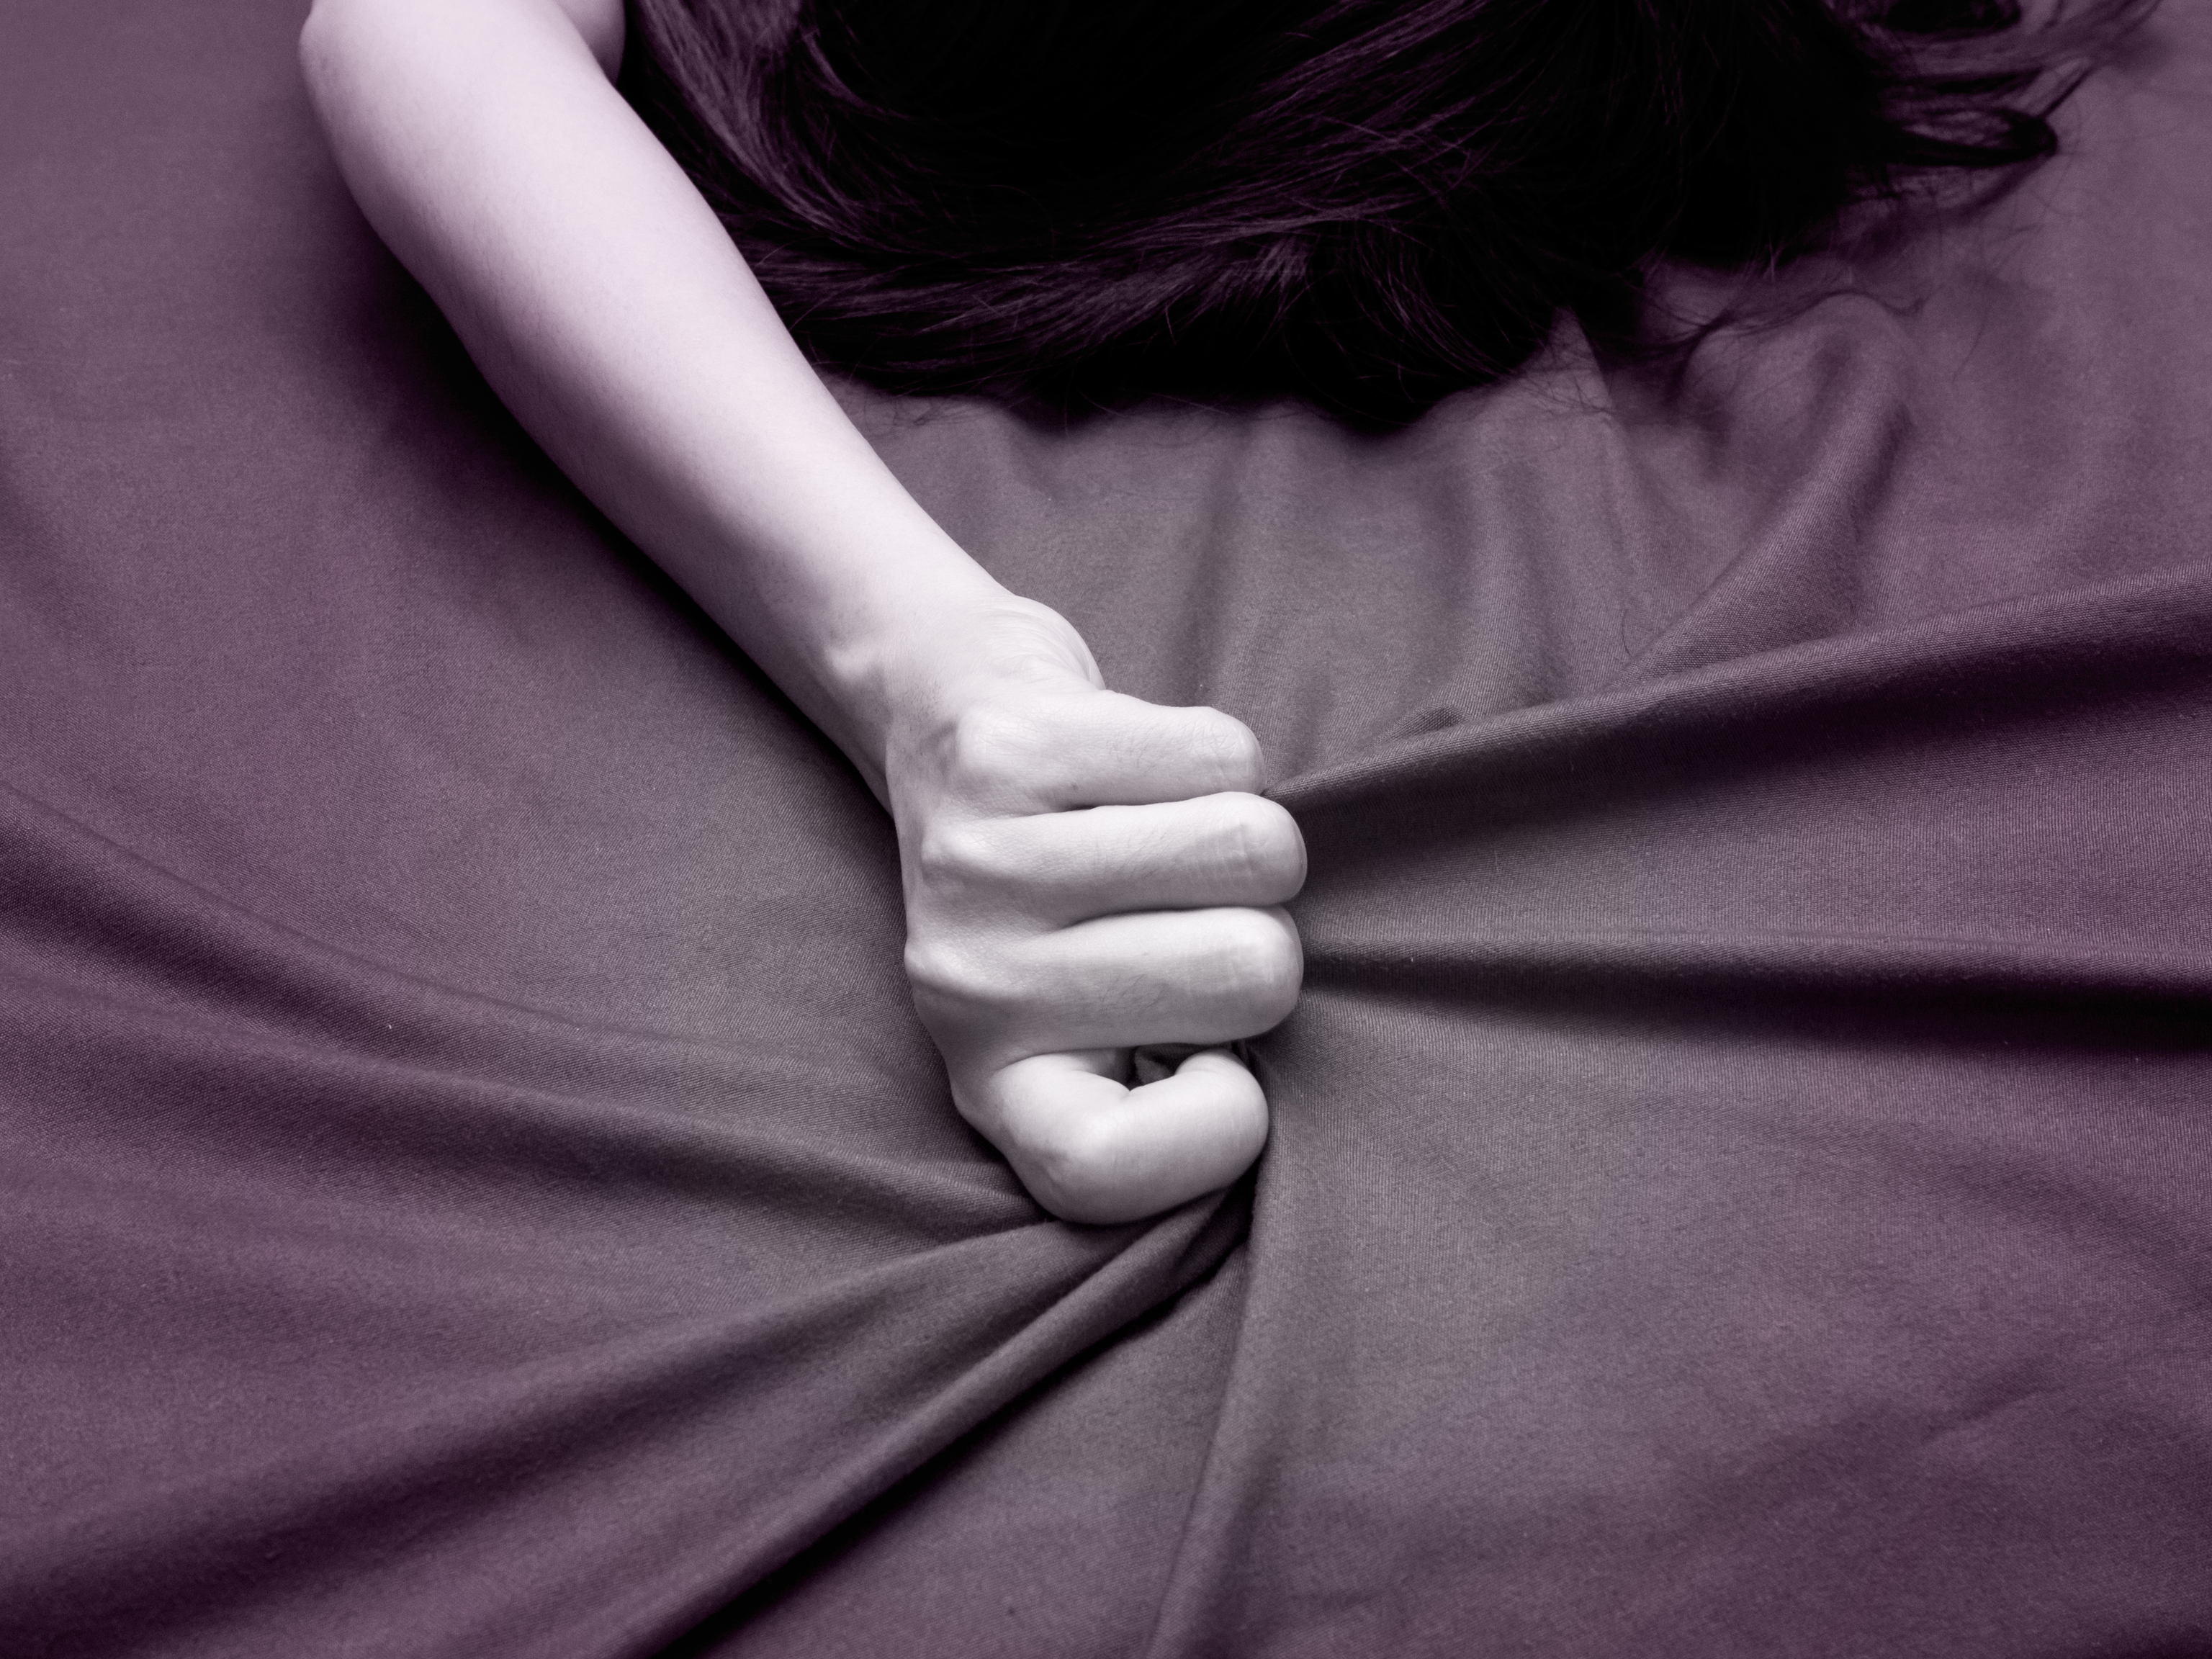 El tabú que rodea el orgasmo femenino: "Es bastante común no llegar solo con penetración"